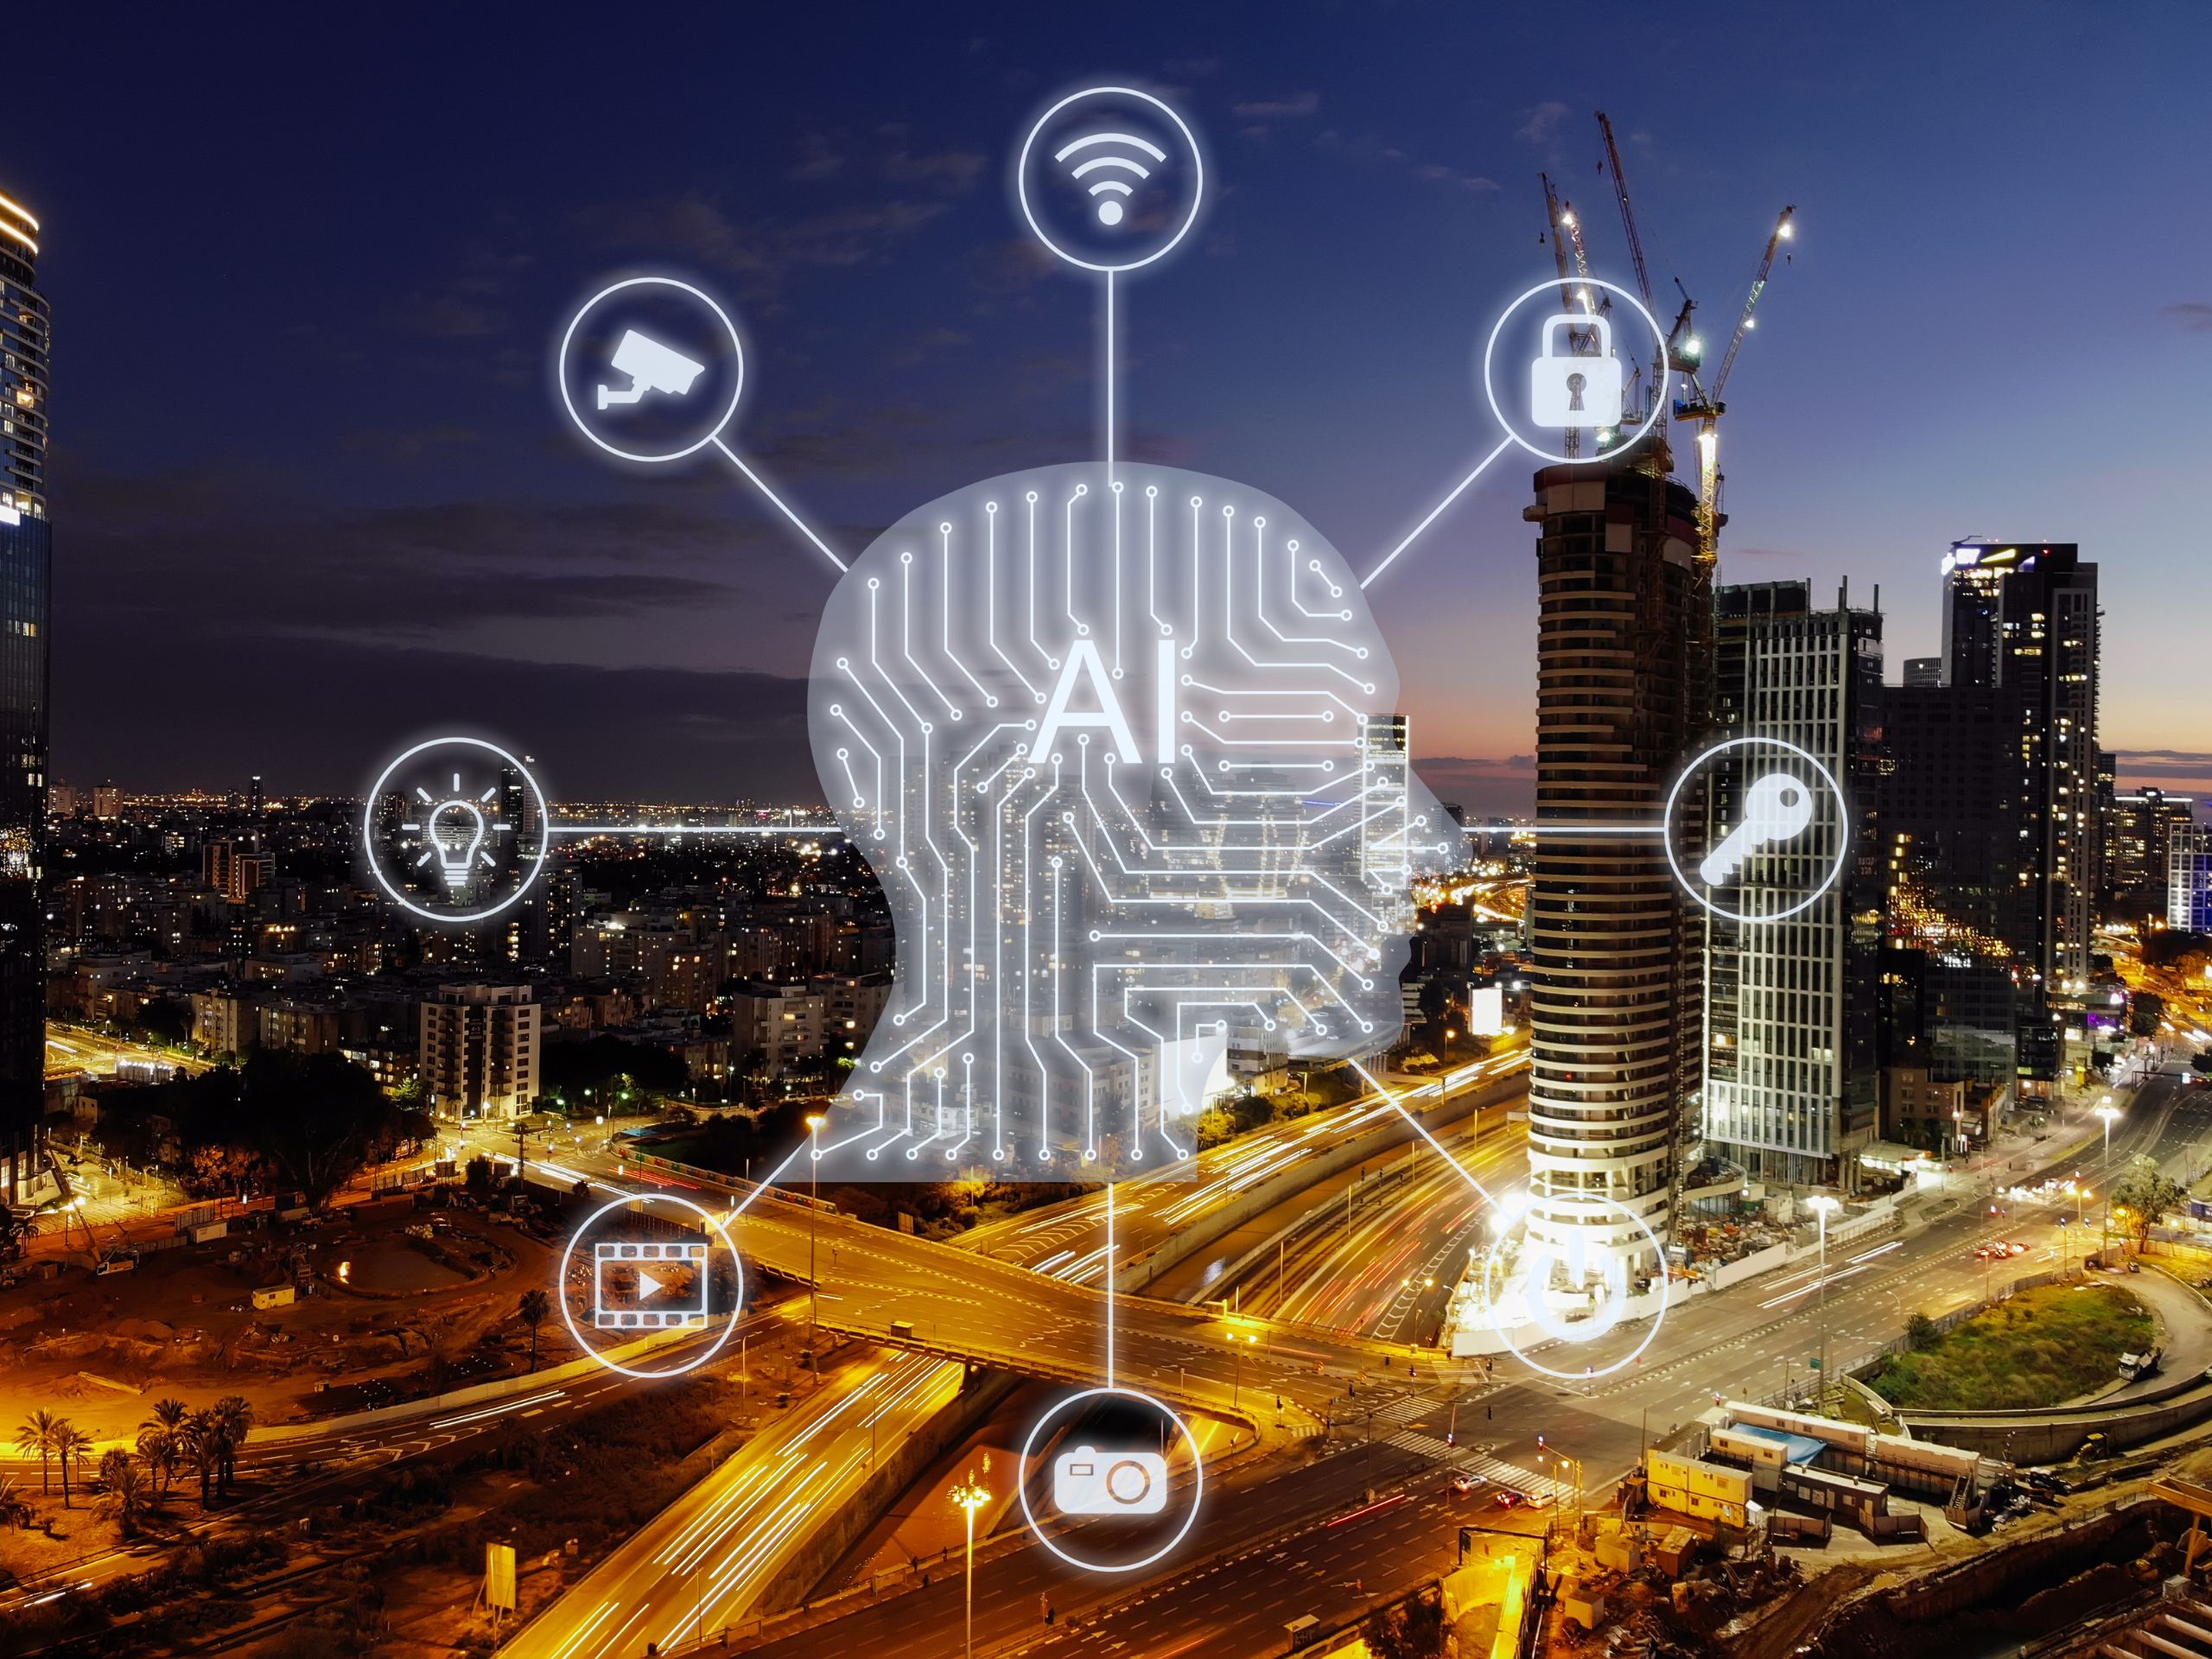 Sử dụng AI trong quản trị ngành Thương mại - Phân phối -Cơ hội và thách thức sử dụng AI trong kinh doanh?